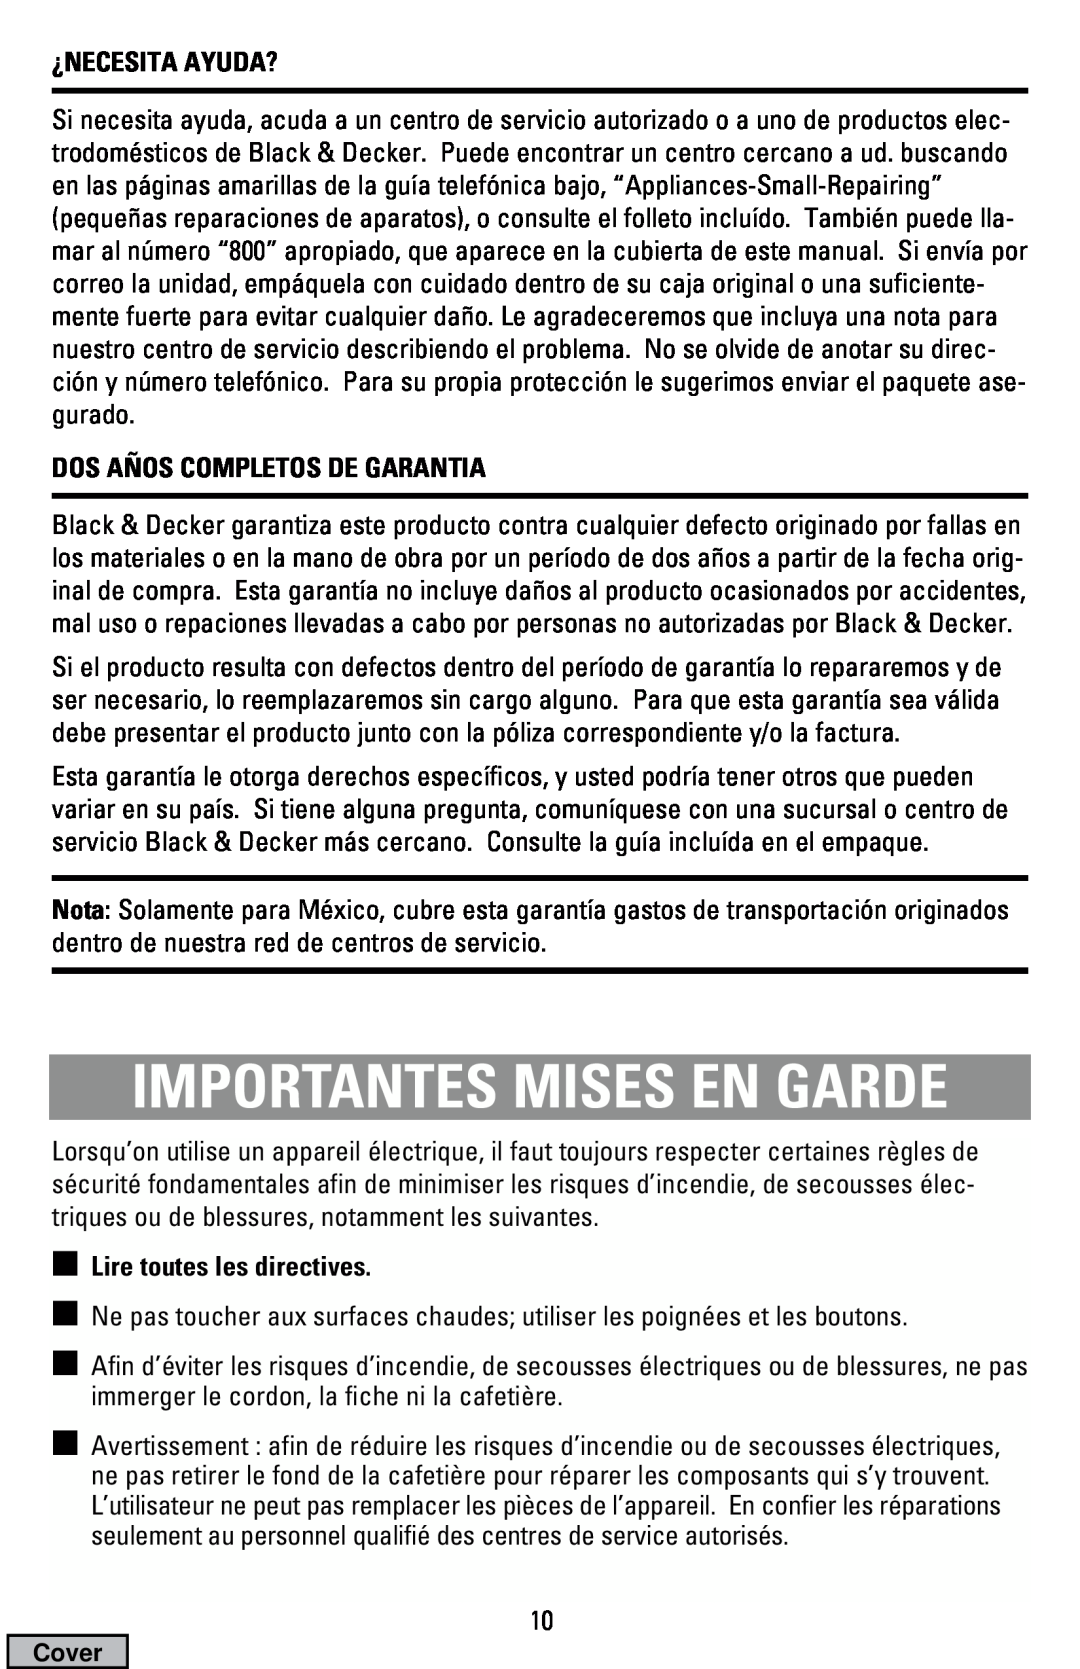 Black & Decker DCM19, DCM16 manual Importantes Mises En Garde, ¿Necesita Ayuda?, Dos Años Completos De Garantia 